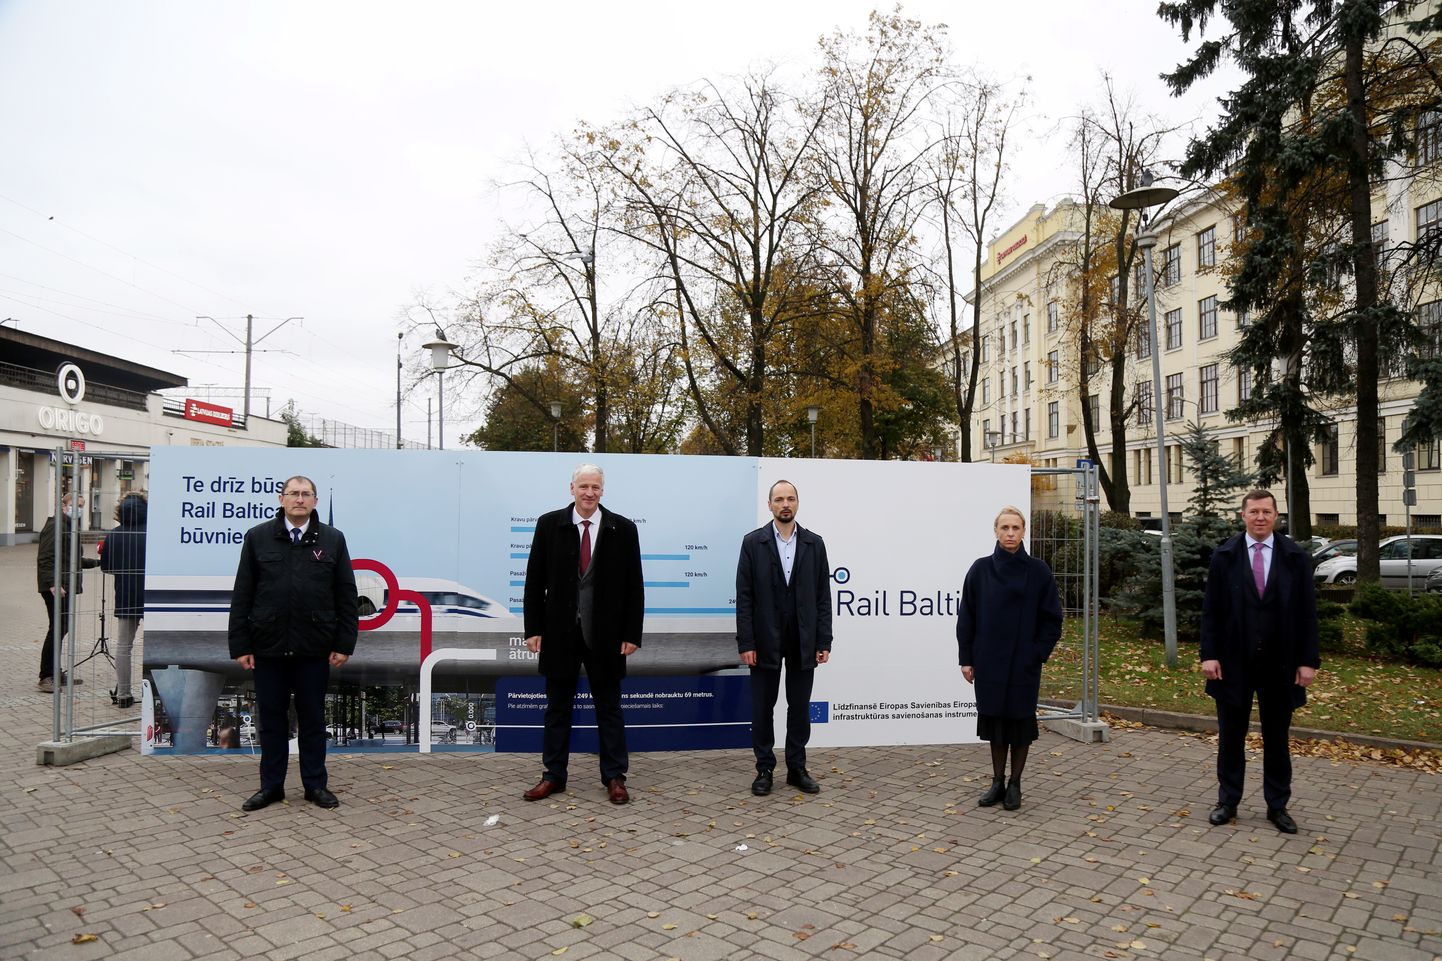 Пресс-брифинг о начале строительства центрального узла Rail Baltica в Риге